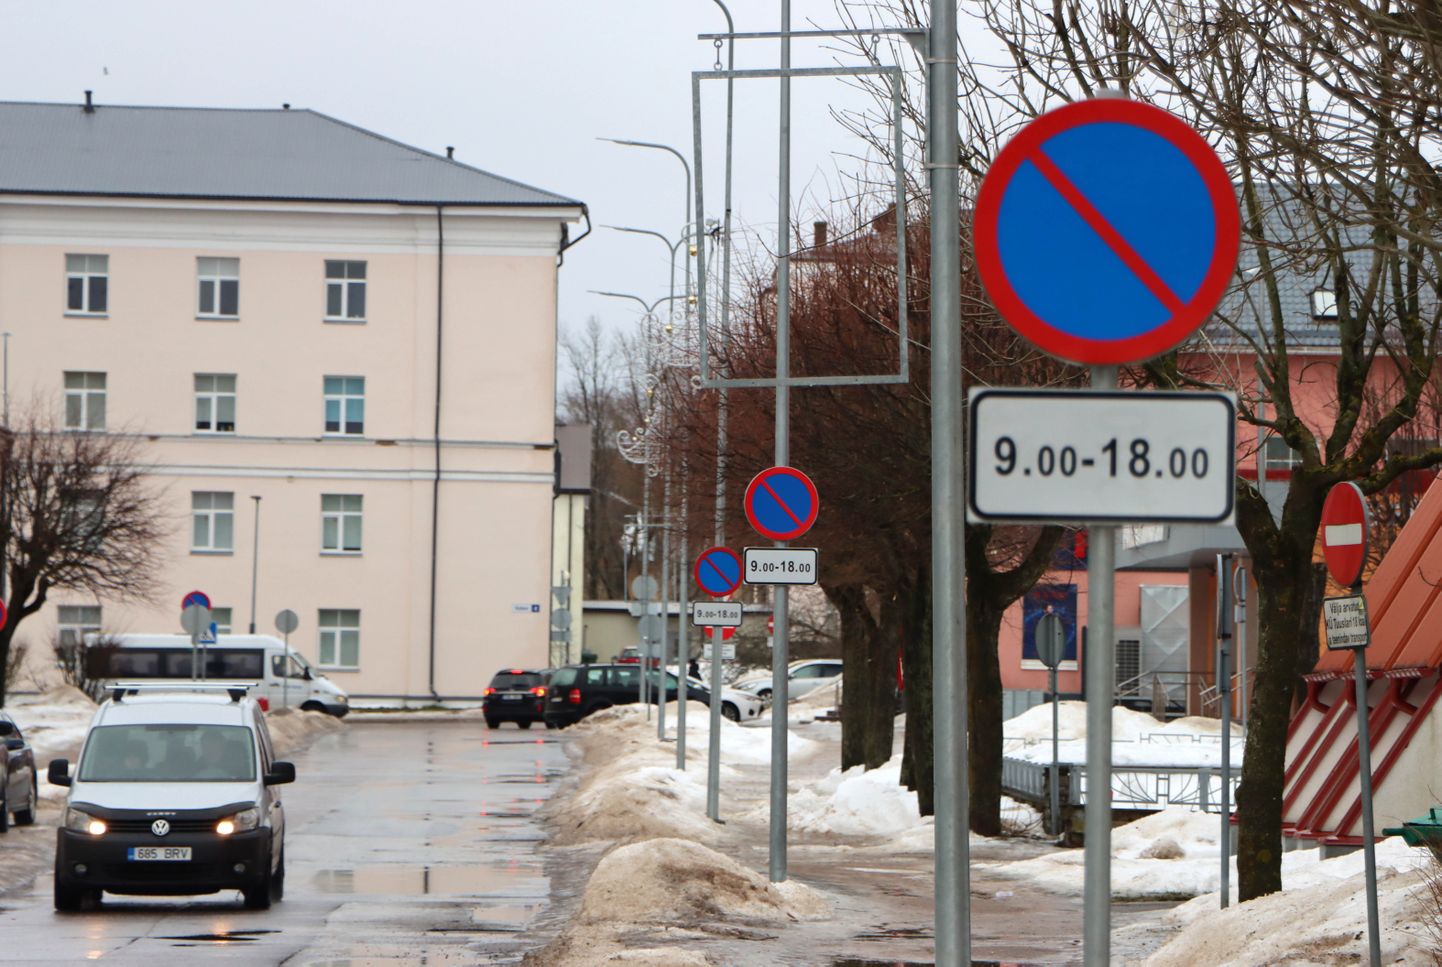 Фото иллюстративное: зимой ограничительных знаков на городских улицах, особенно узких, становится больше.